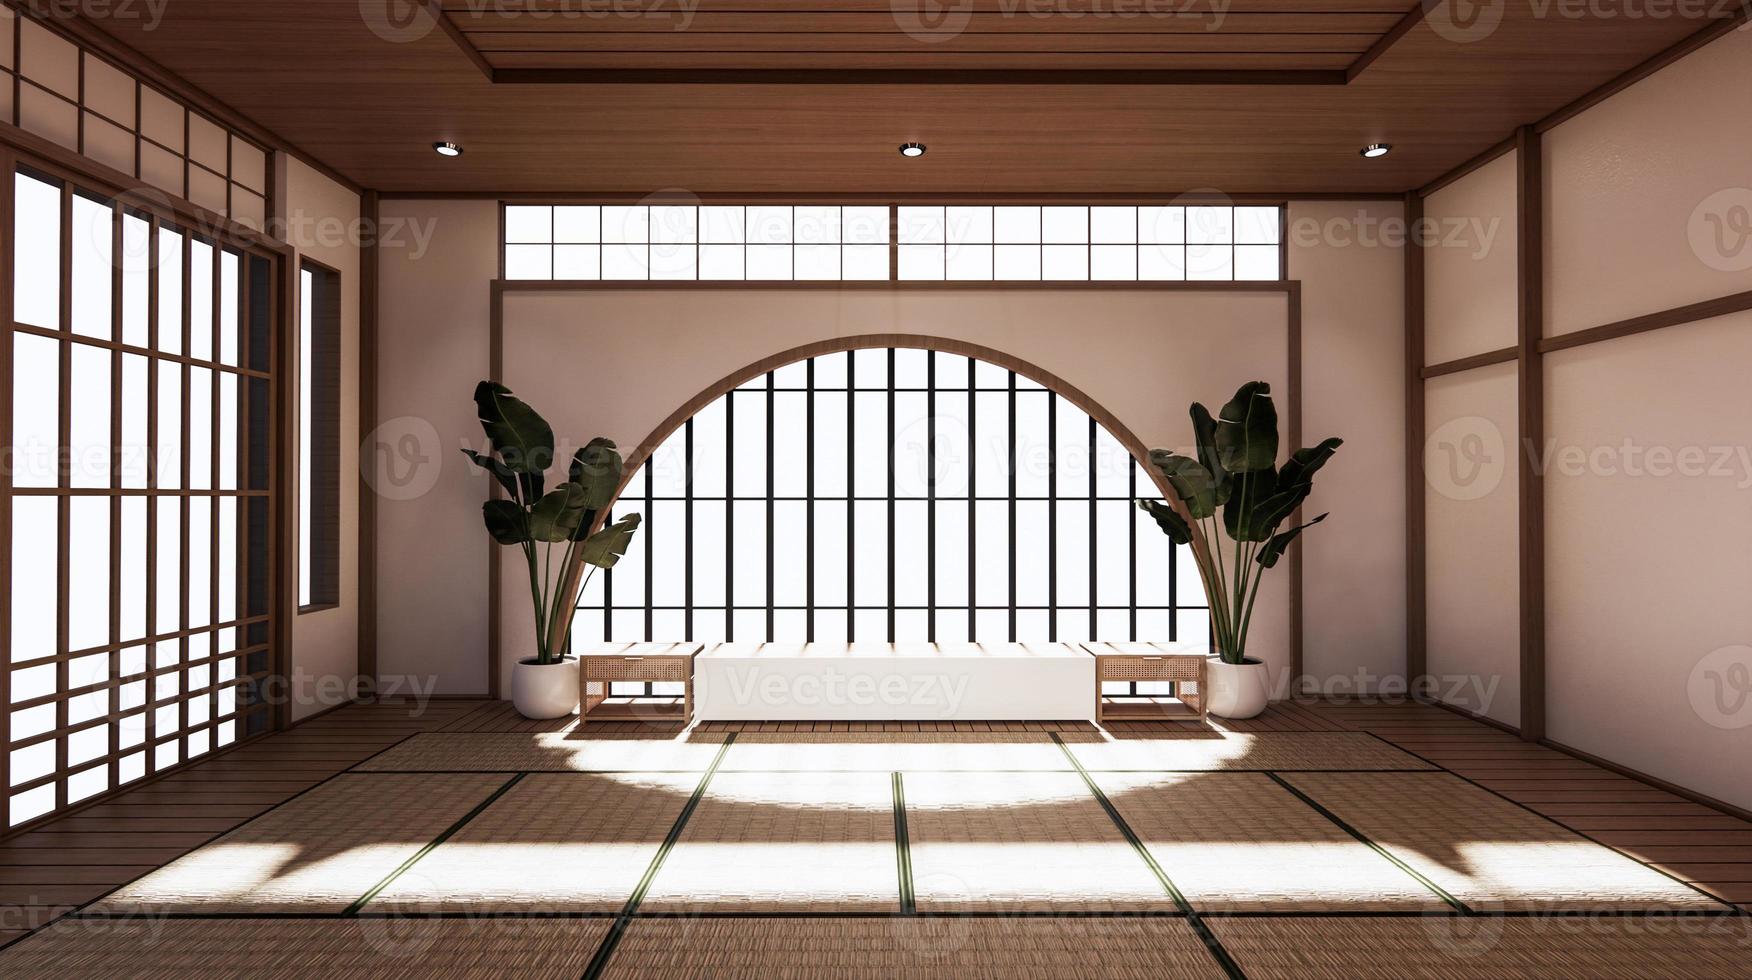 La habitación es espaciosa de diseño de estilo japonés y luminosa en tonos naturales. Representación 3d foto